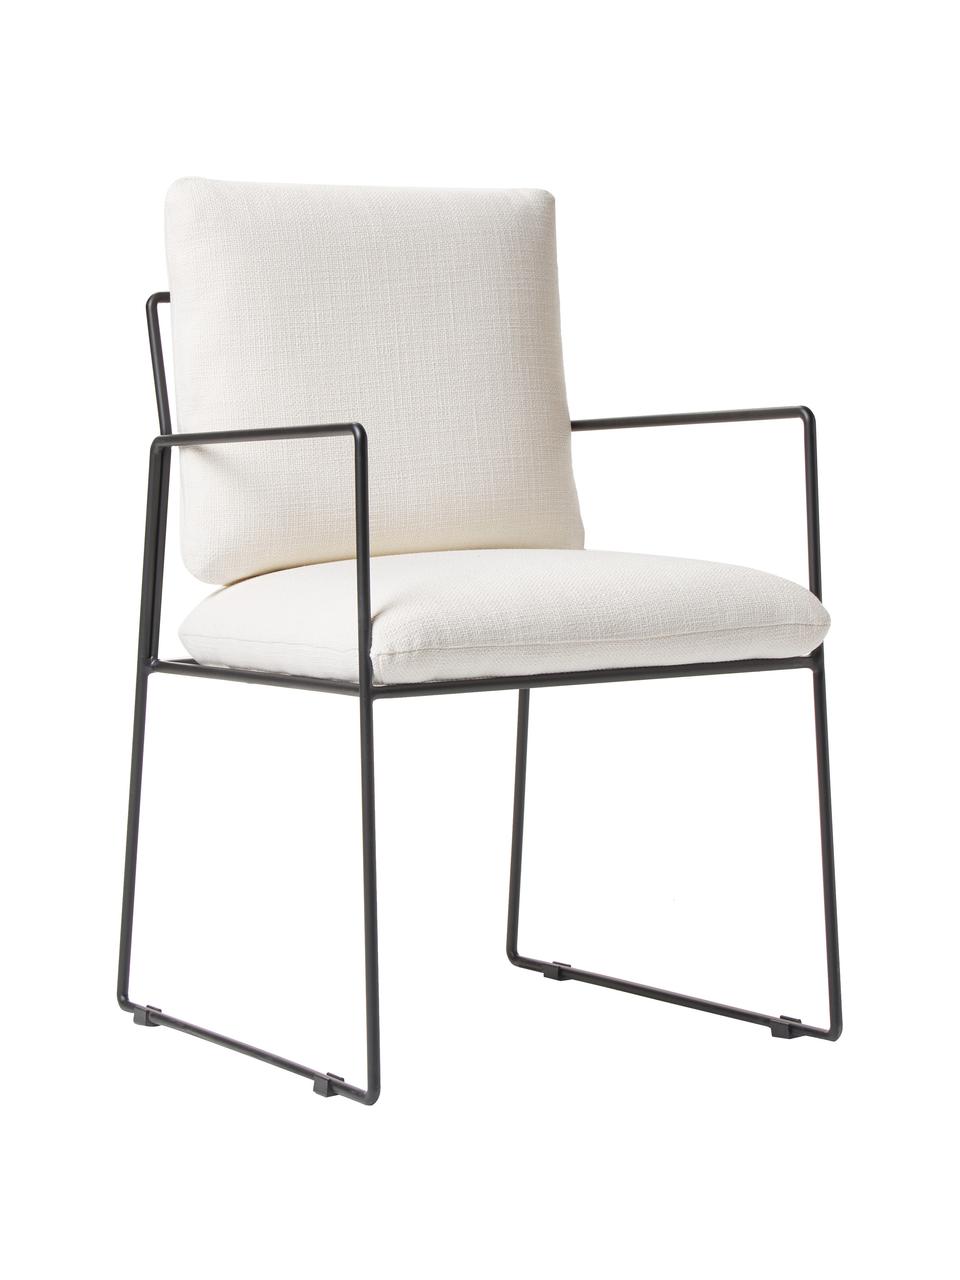 Krzesło tapicerowane z metalowym stelażem Wayne, Tapicerka: 97% poliester, 3% len Dzi, Stelaż: metal malowany proszkowo, Biały, S 54 x G 58 cm